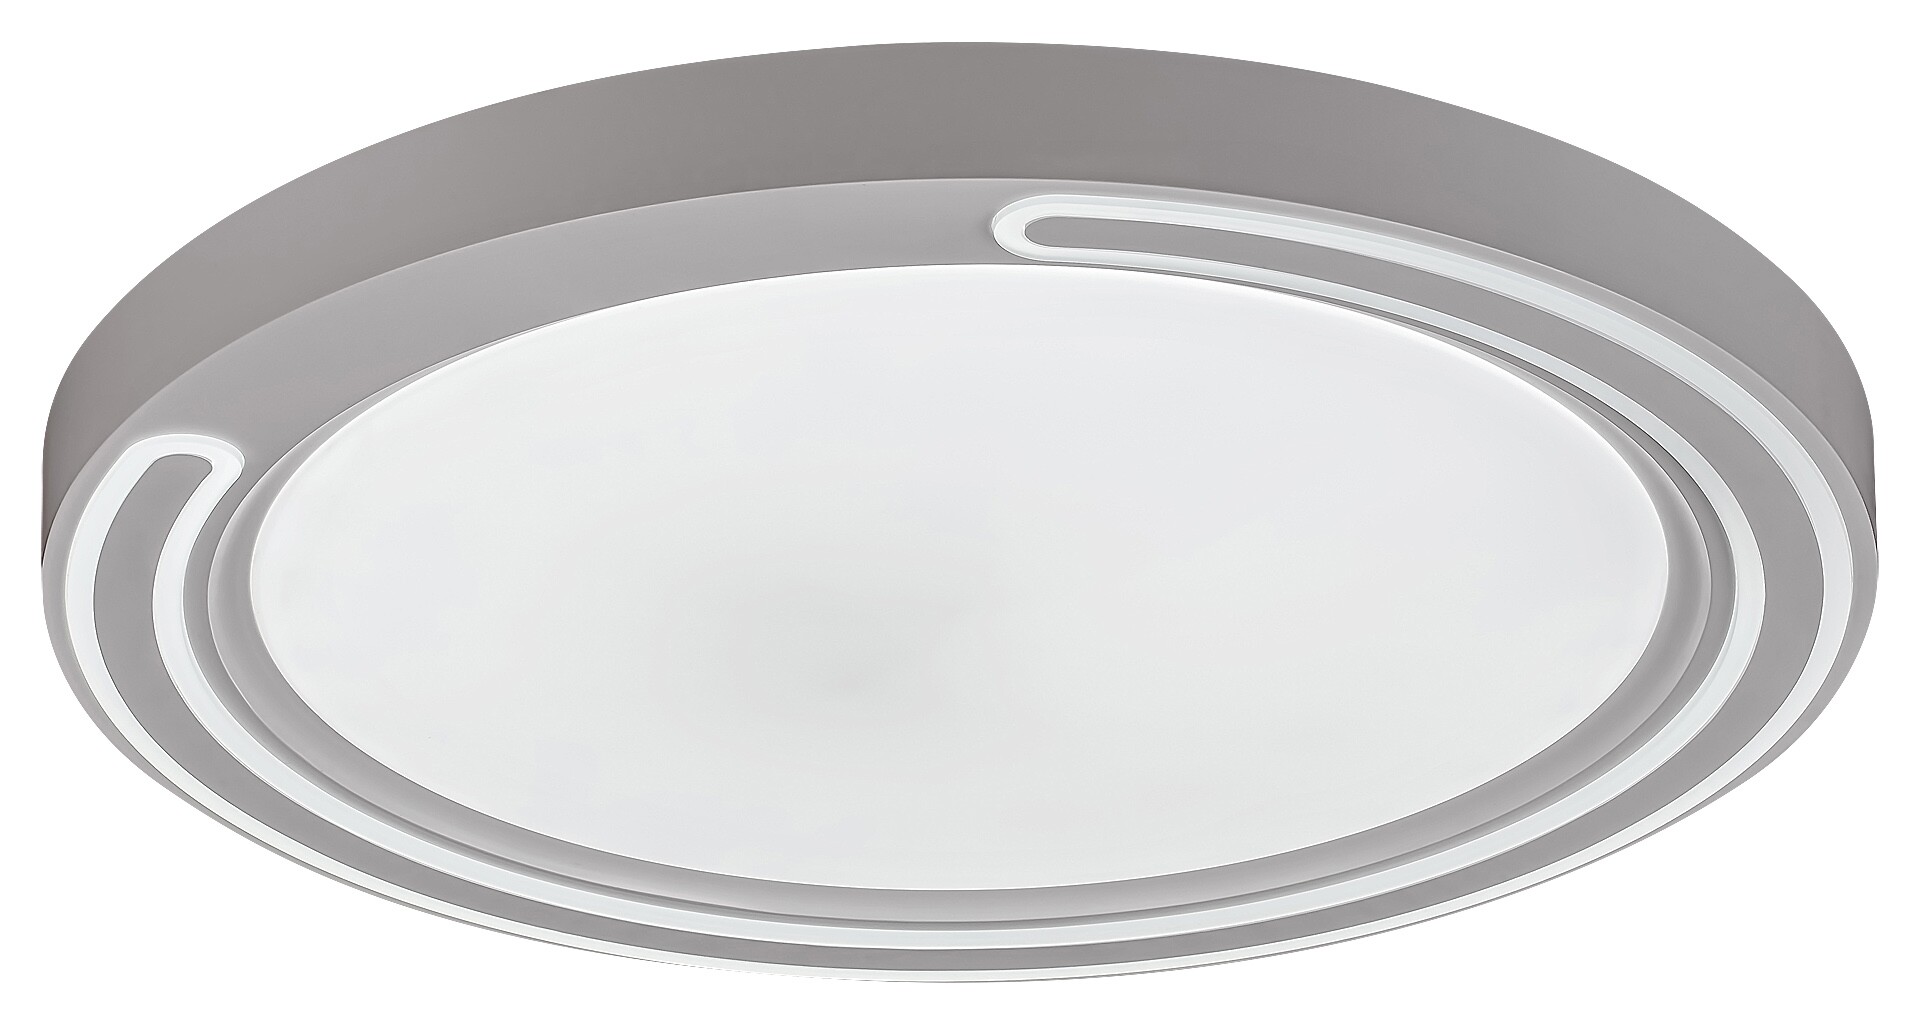 Deckenleuchte Triton 2249, 40W, 3200lm, Metall, weiß, rund, rgb, dimmbar, ø510mm